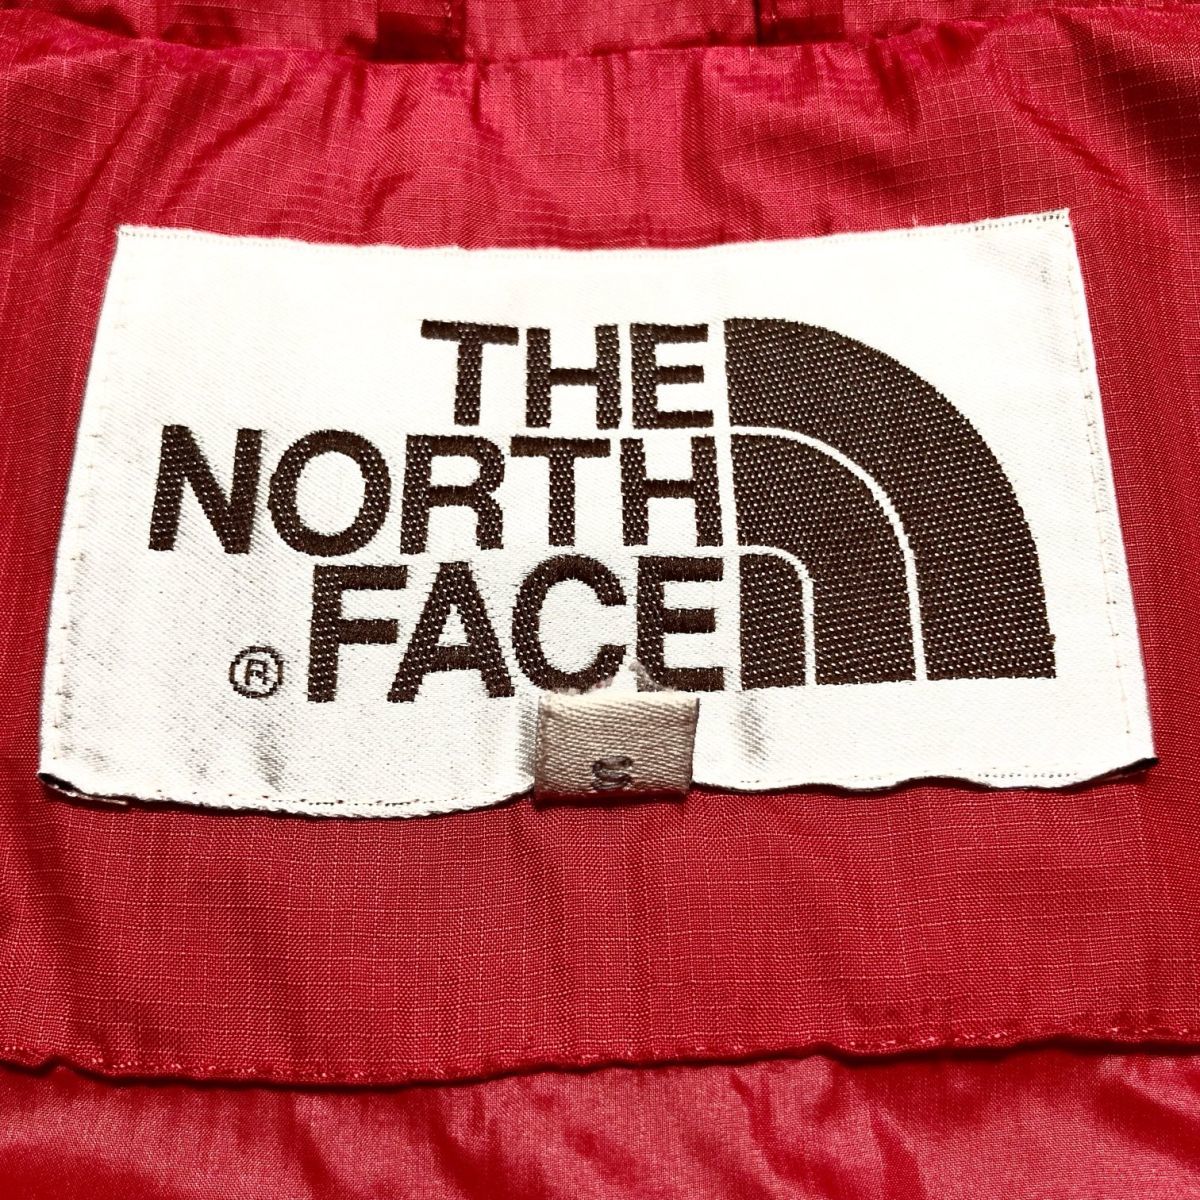 ノースフェイス ダウンジャケット メンズSサイズ 正規品 赤 茶 レッド ブラウン 本物 ヌプシ バルトロ ライト ヒマラヤン マクマード m3412_画像5